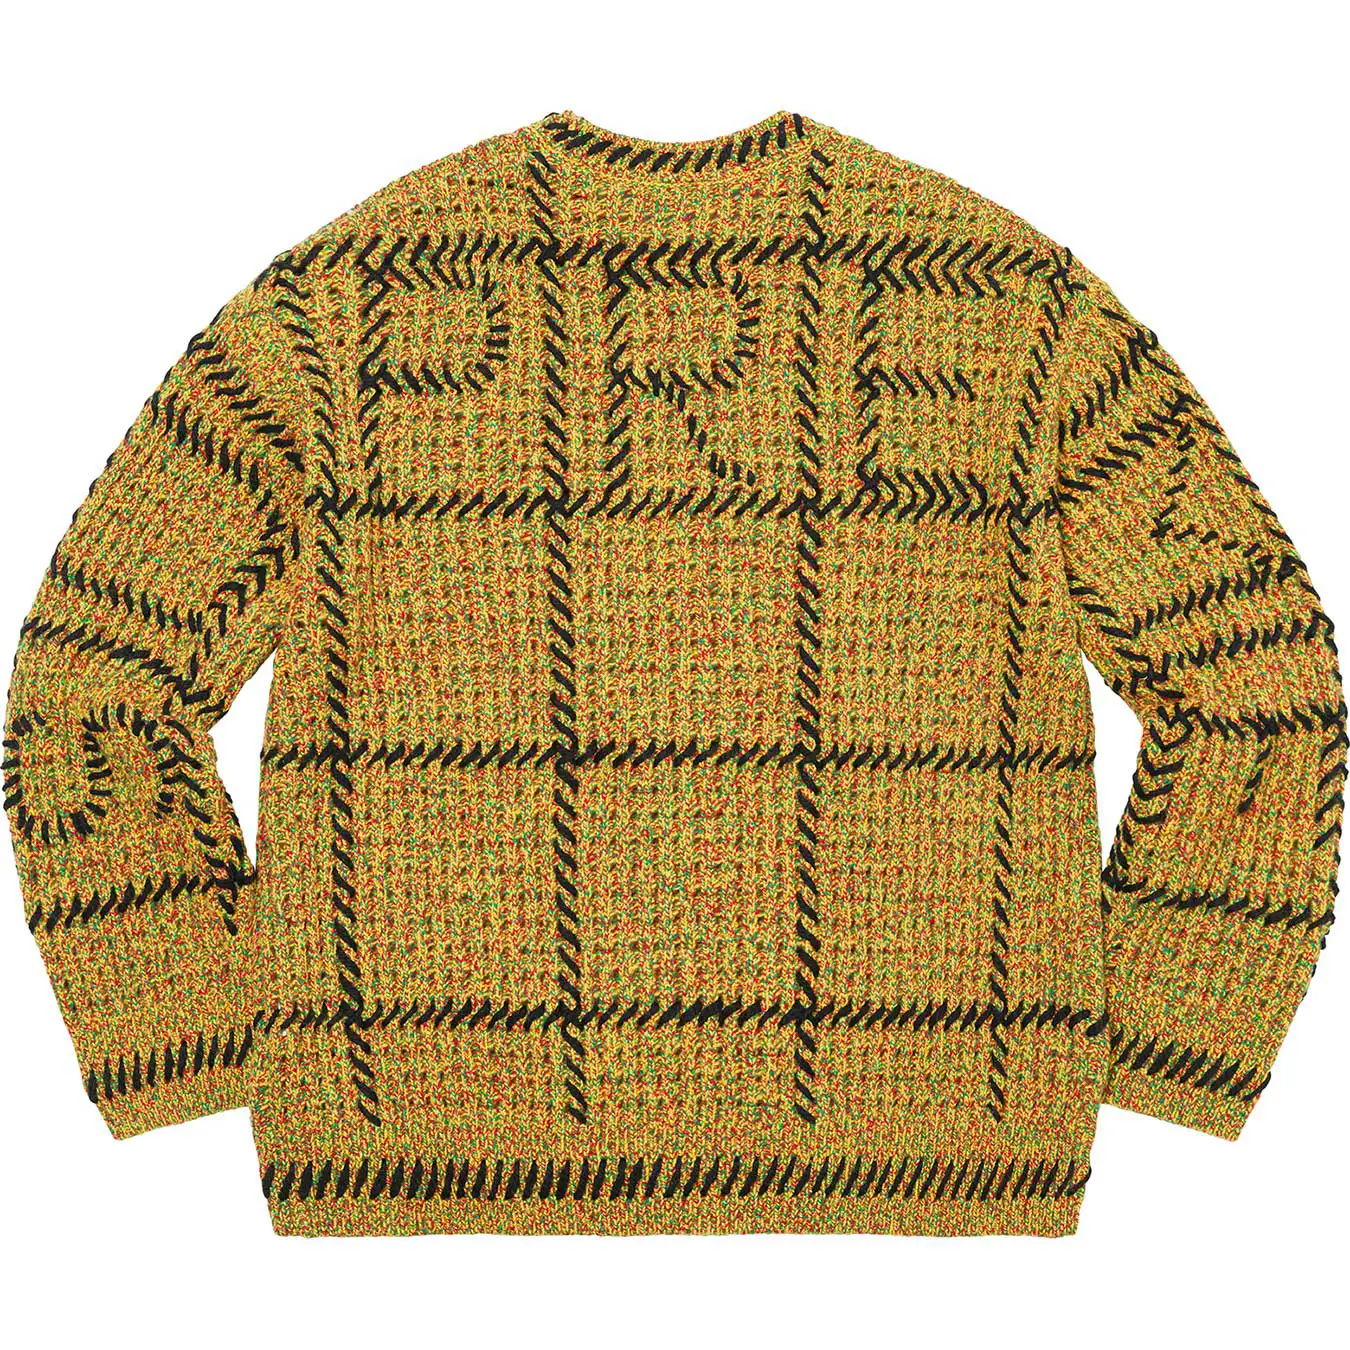 Supreme Quilt Stitch Sweater